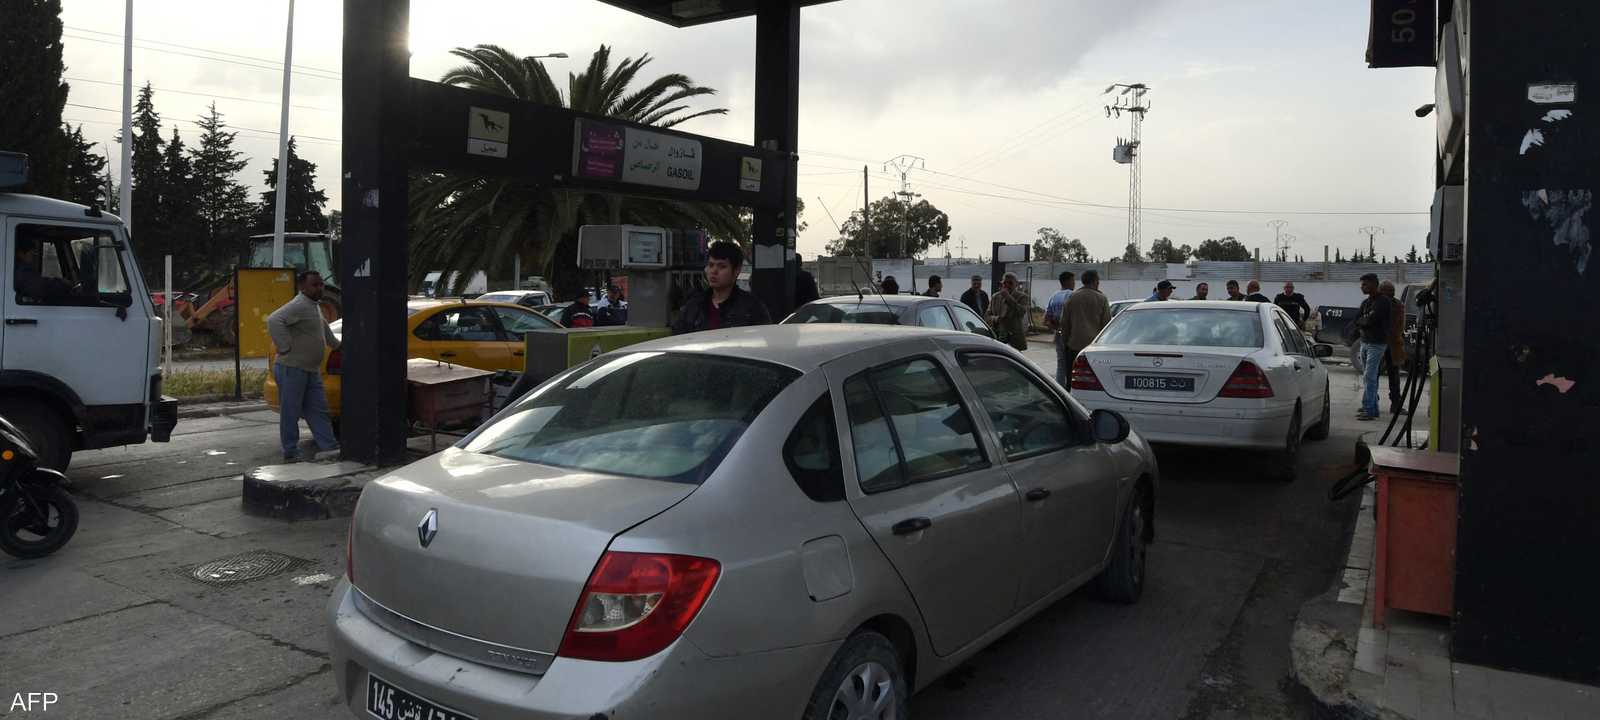 سعر البنزين في تونس سيرتفع إلى 2.525 دينار